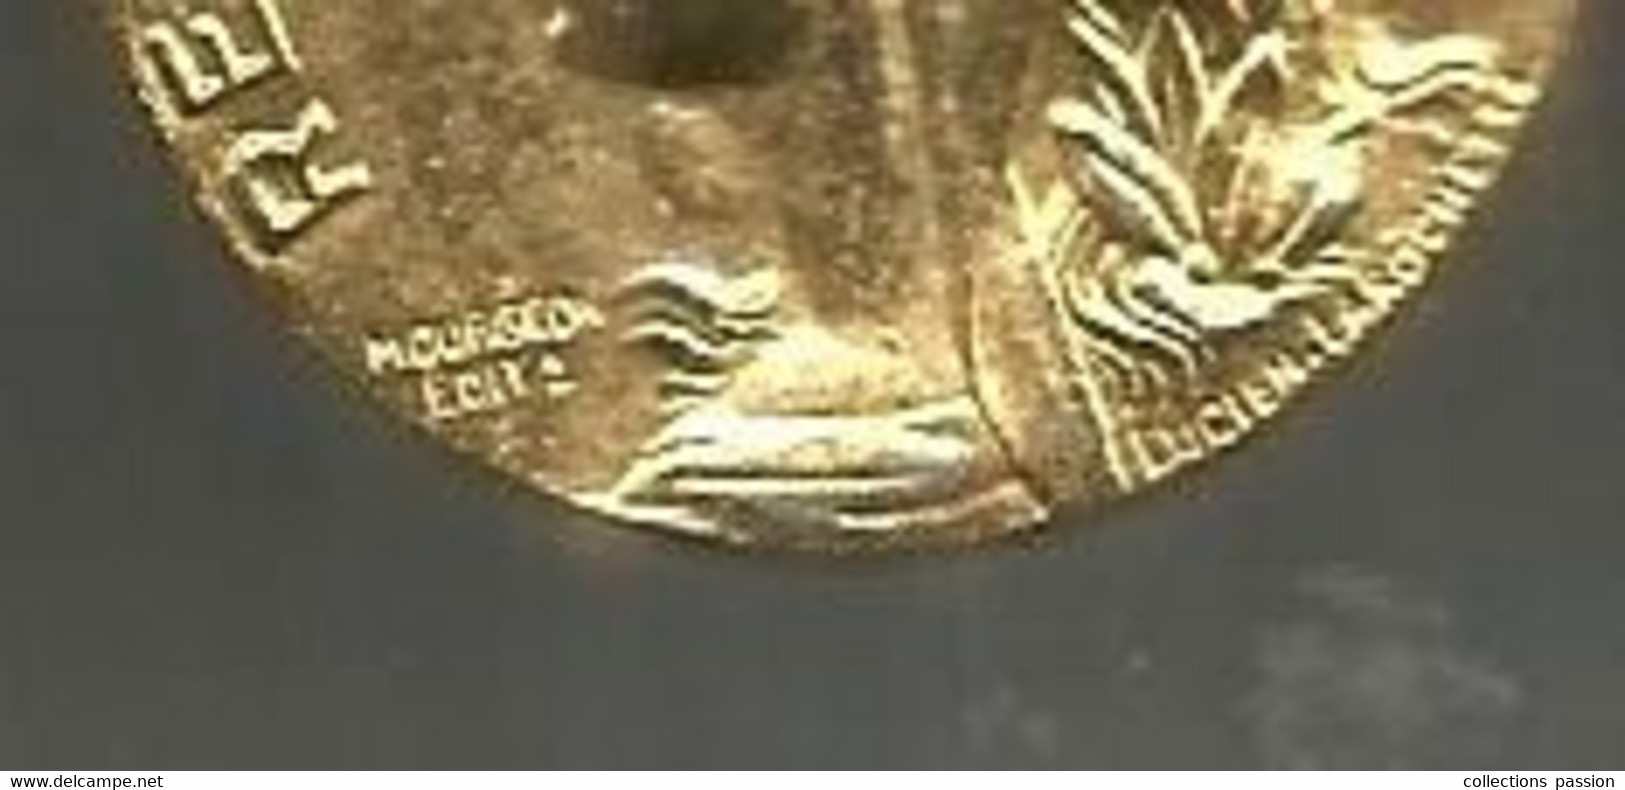 Médaille Du Travail, Commerce Et Industrie, Signée Mourgeon Edit R Et Lucien Larochette,1992, Frais Fr 2.25 E - Professionnels / De Société